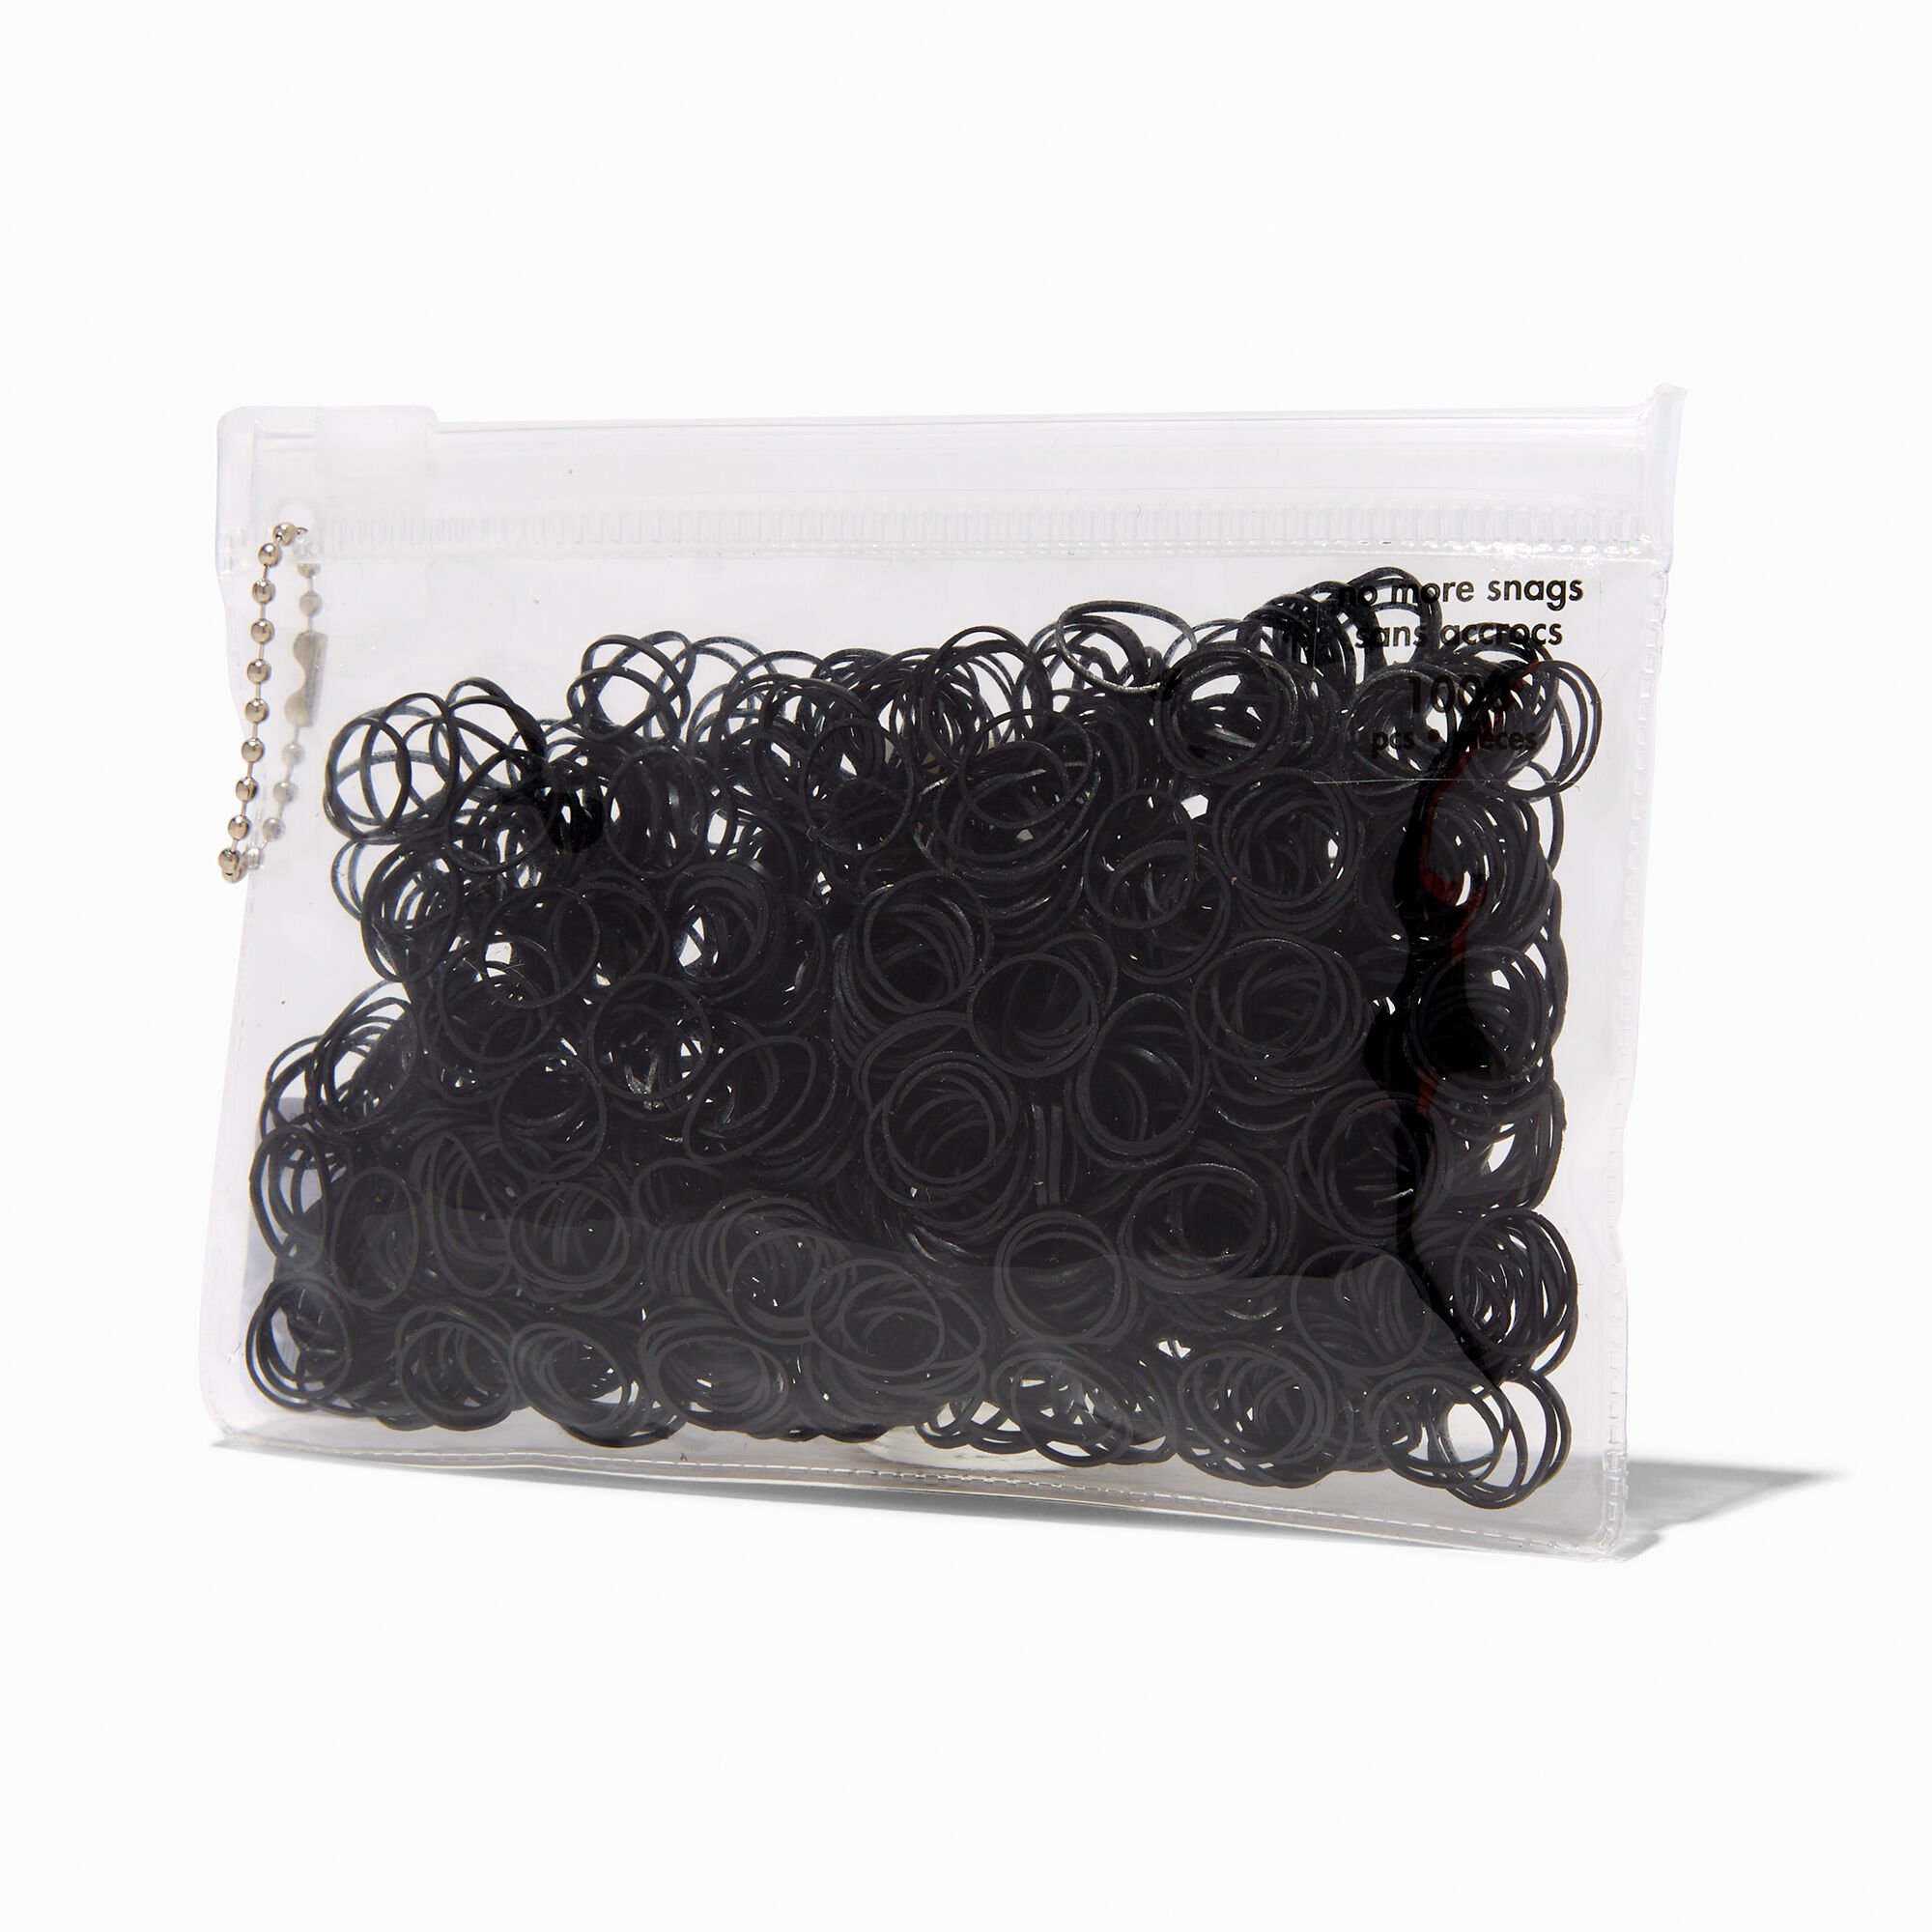 Claire's Mini élastiques doux pour les cheveux noirs - Lot de 1 000